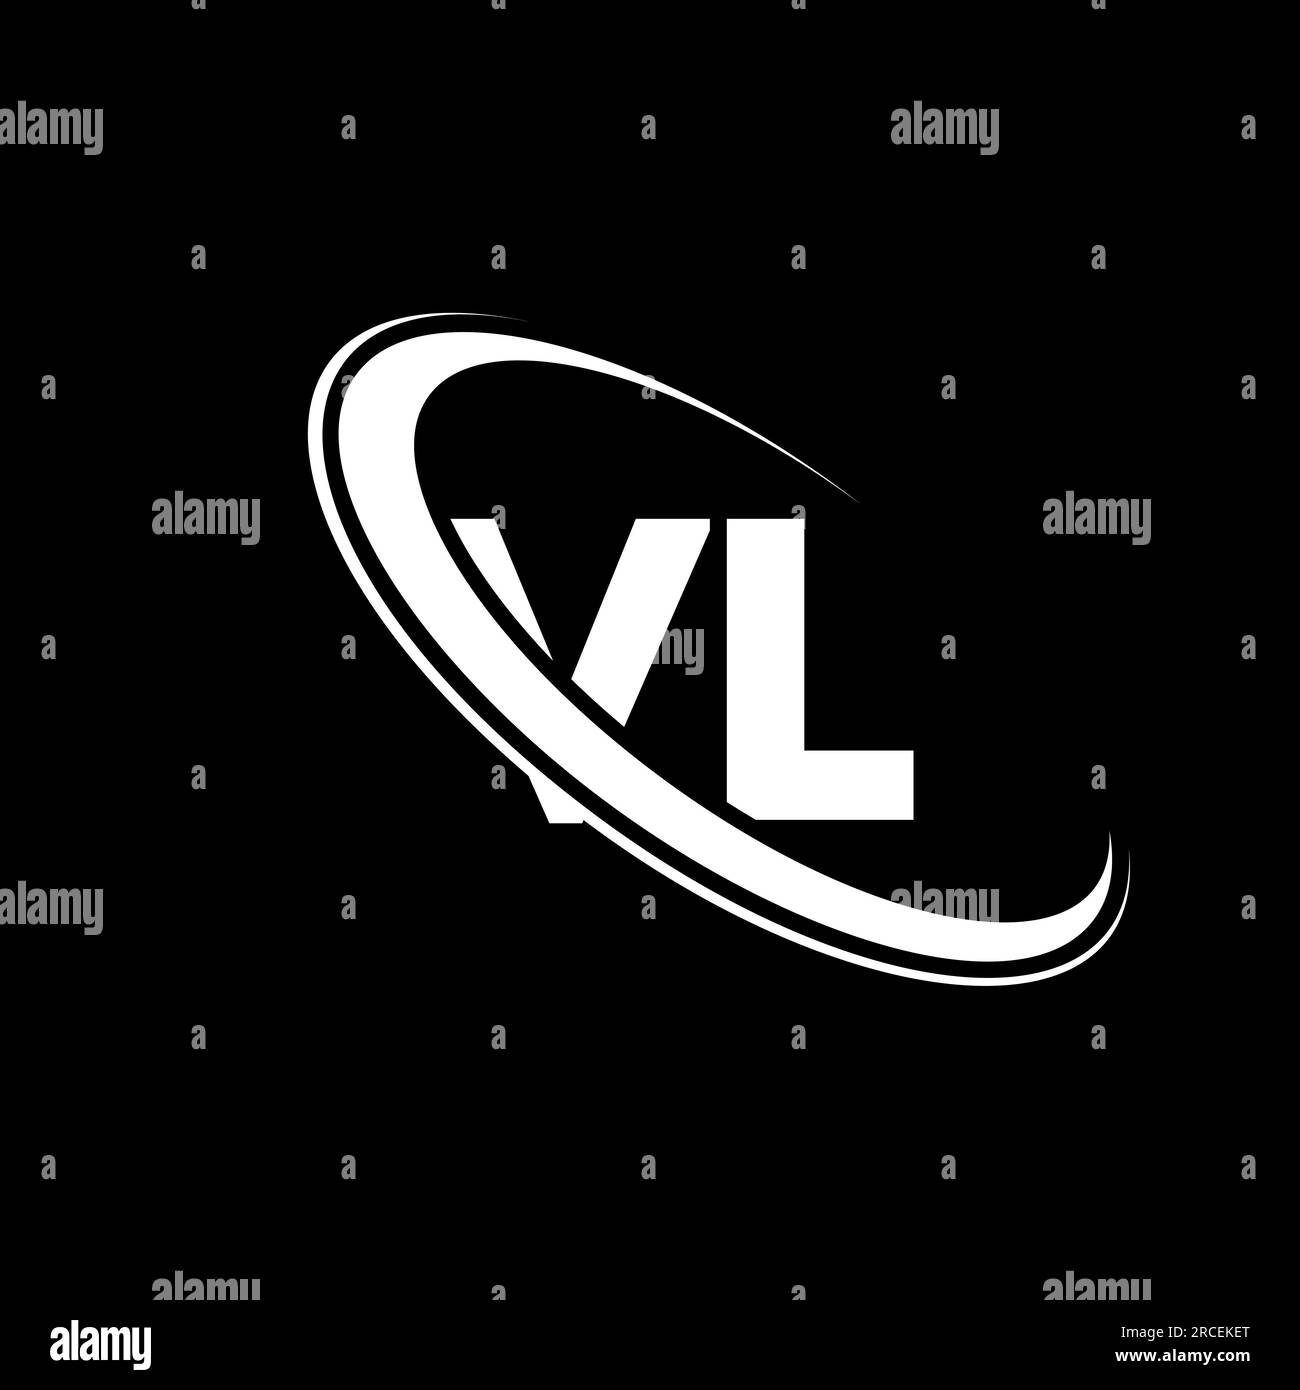 VL V L Letter Logo Design With Fire Flames And Orange Swoosh